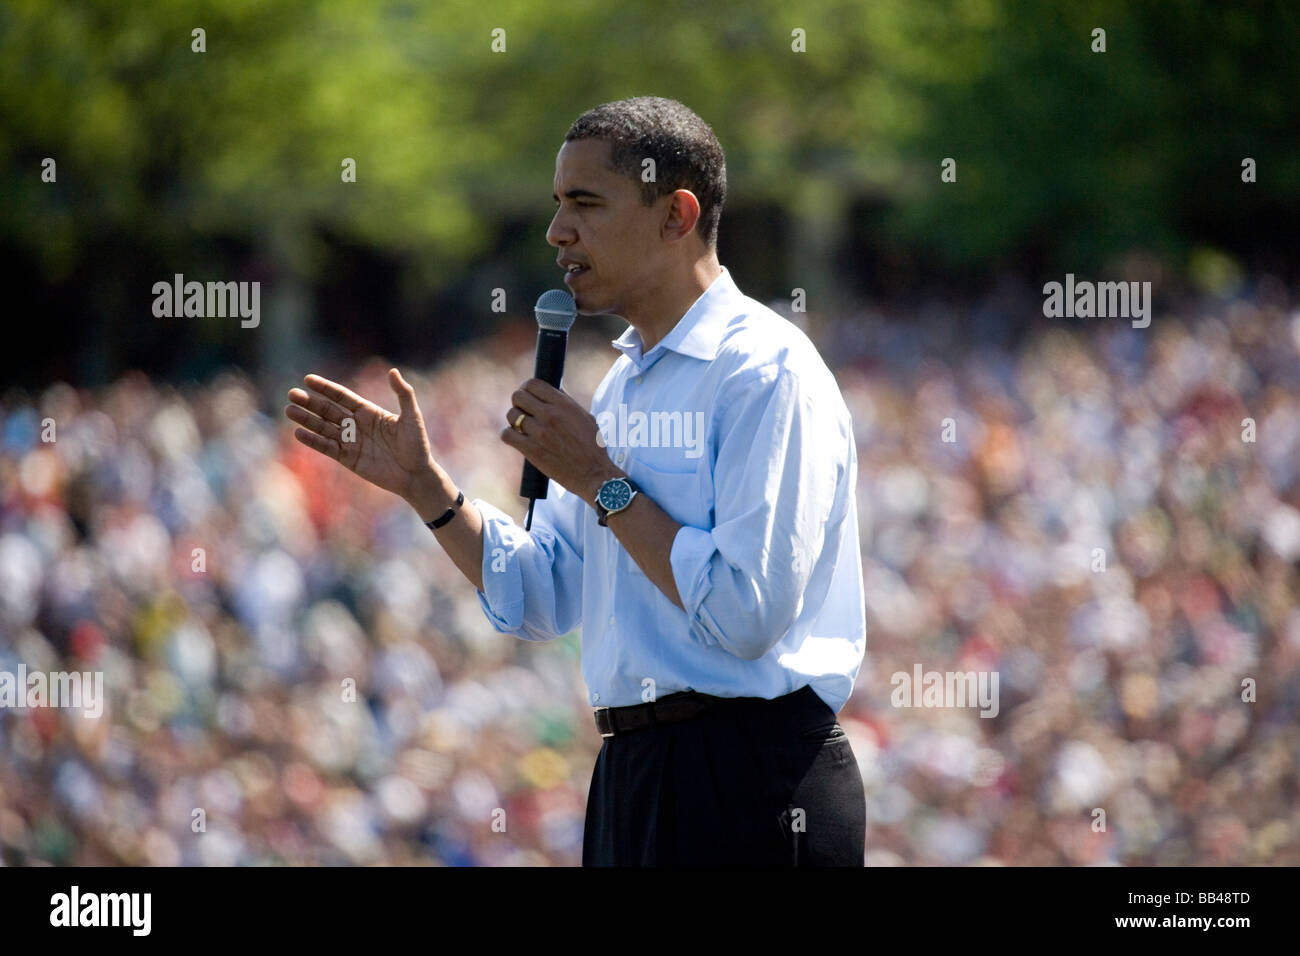 Präsidentschaftskandidat und demokratischen Spitzenreiter, Barack Obama, spricht vor der riesigen Menschenmenge bei einer rekordverdächtigen p Stockfoto